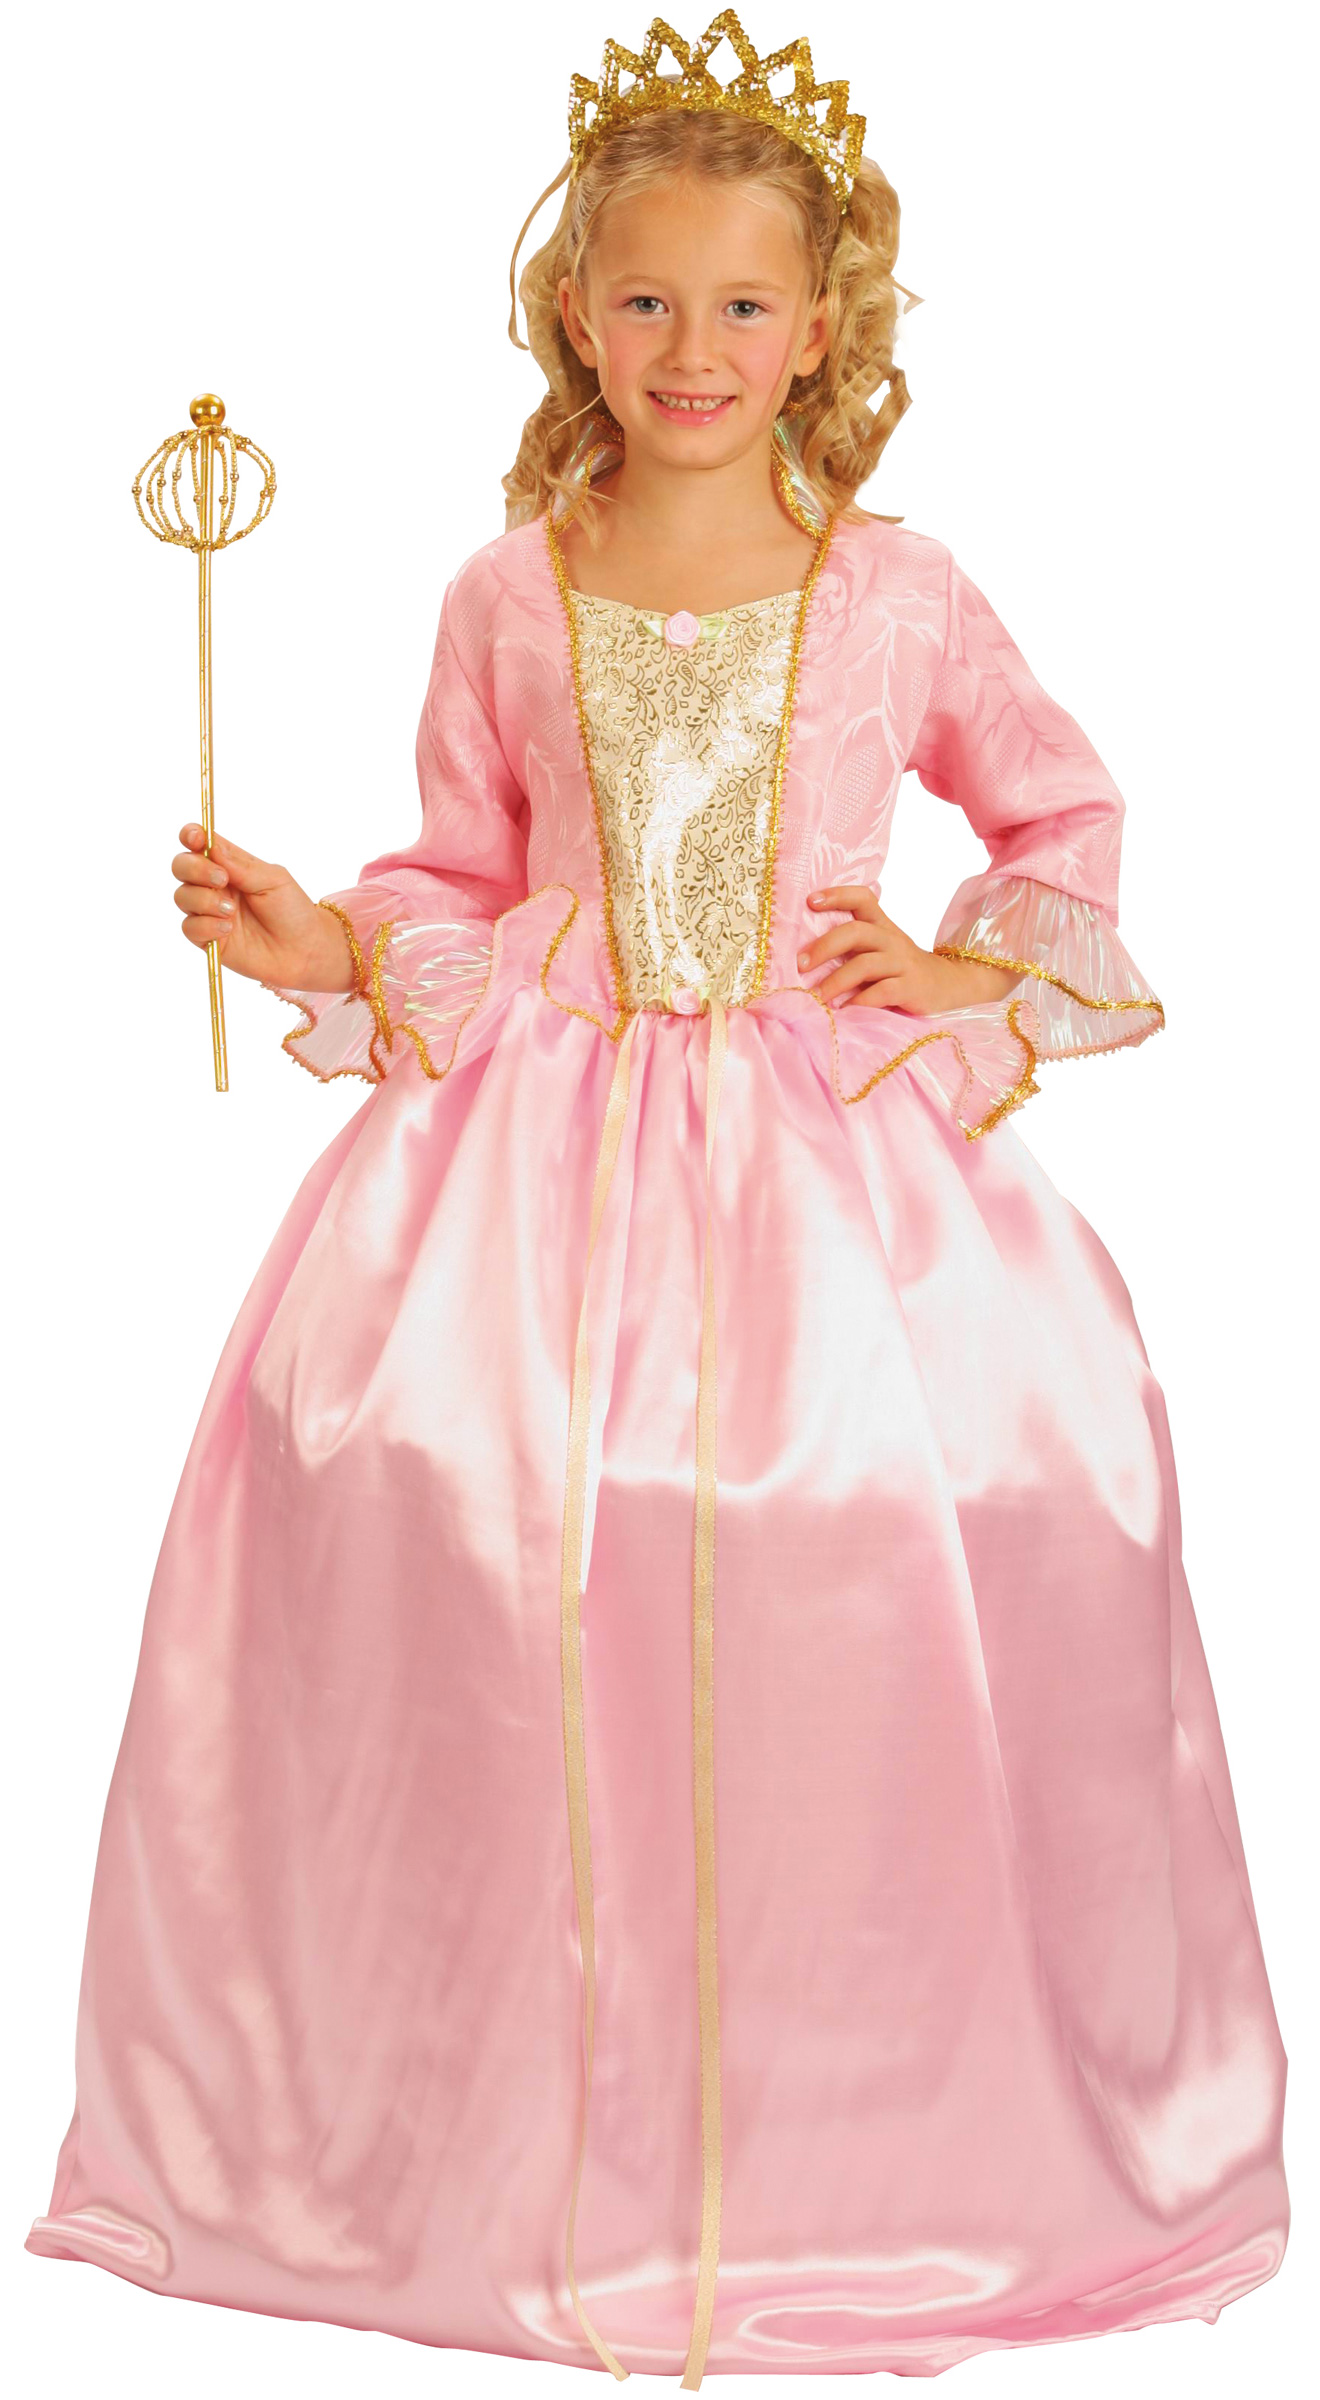 Déguisement Princesse Fille : Vente de déguisements Princesse et